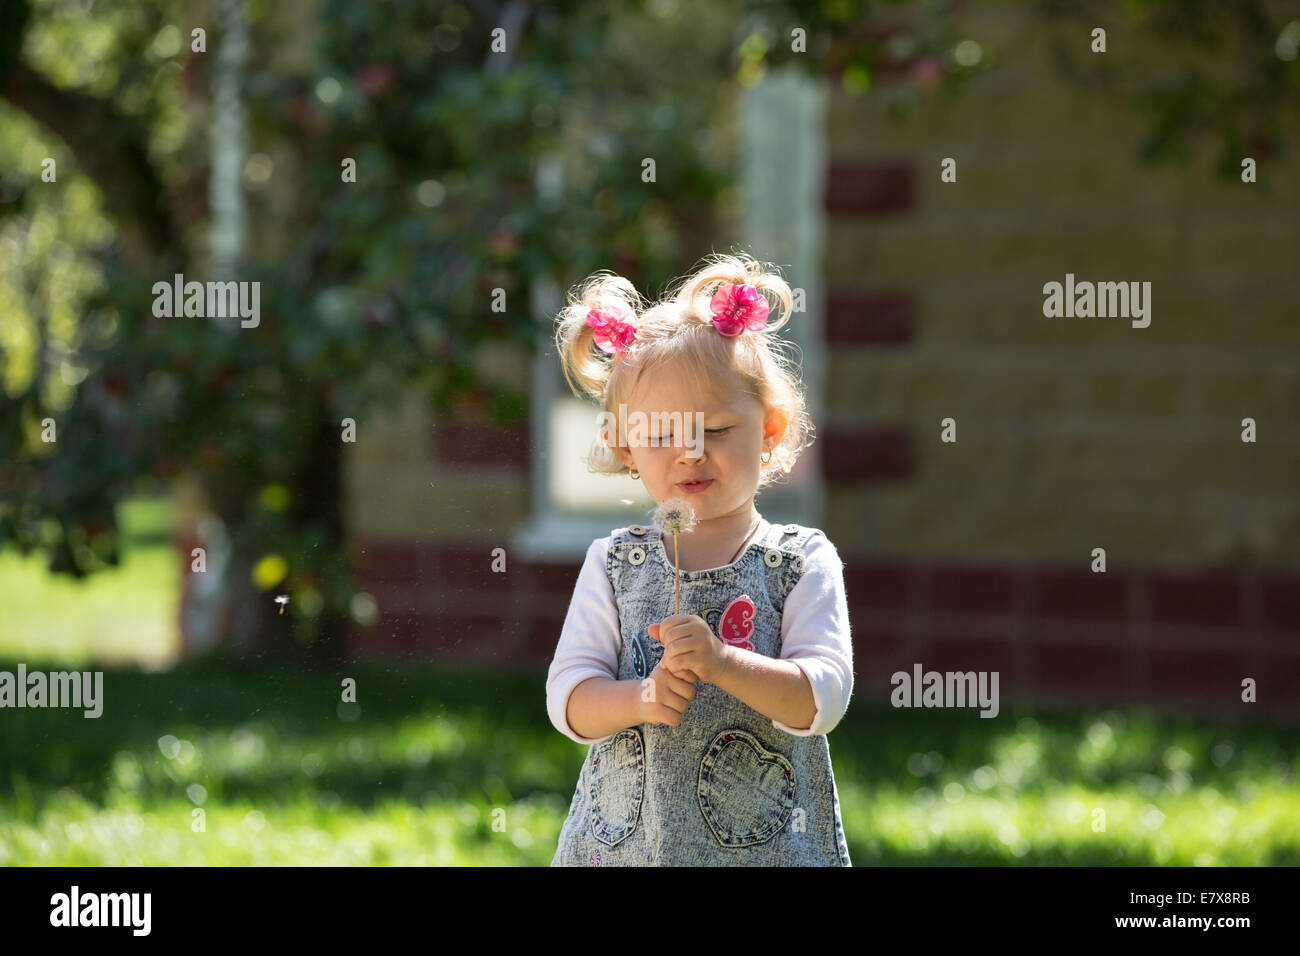 Entzückende kleine Kind Mädchen mit Blume. Sommer grün Natur.  Verwenden Sie es für Baby, Elternschaft oder Liebe Konzept Stockfoto